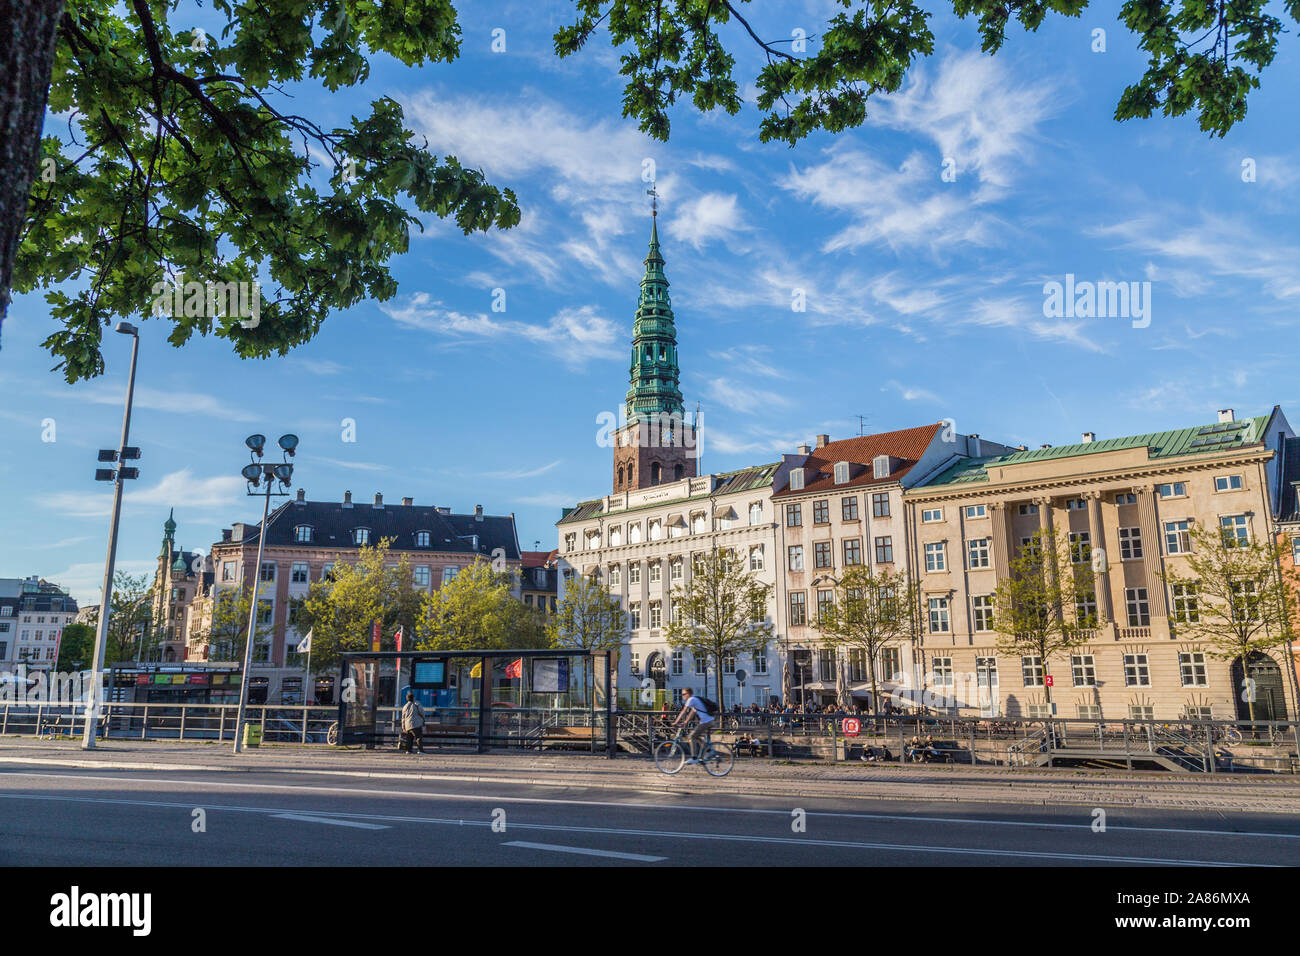 COPENHAGEN, Danimarca - 22 Maggio 2017: edifici, architettura e riflessioni in Copenhagen DANIMARCA durante il giorno. La gente può essere visto. Foto Stock